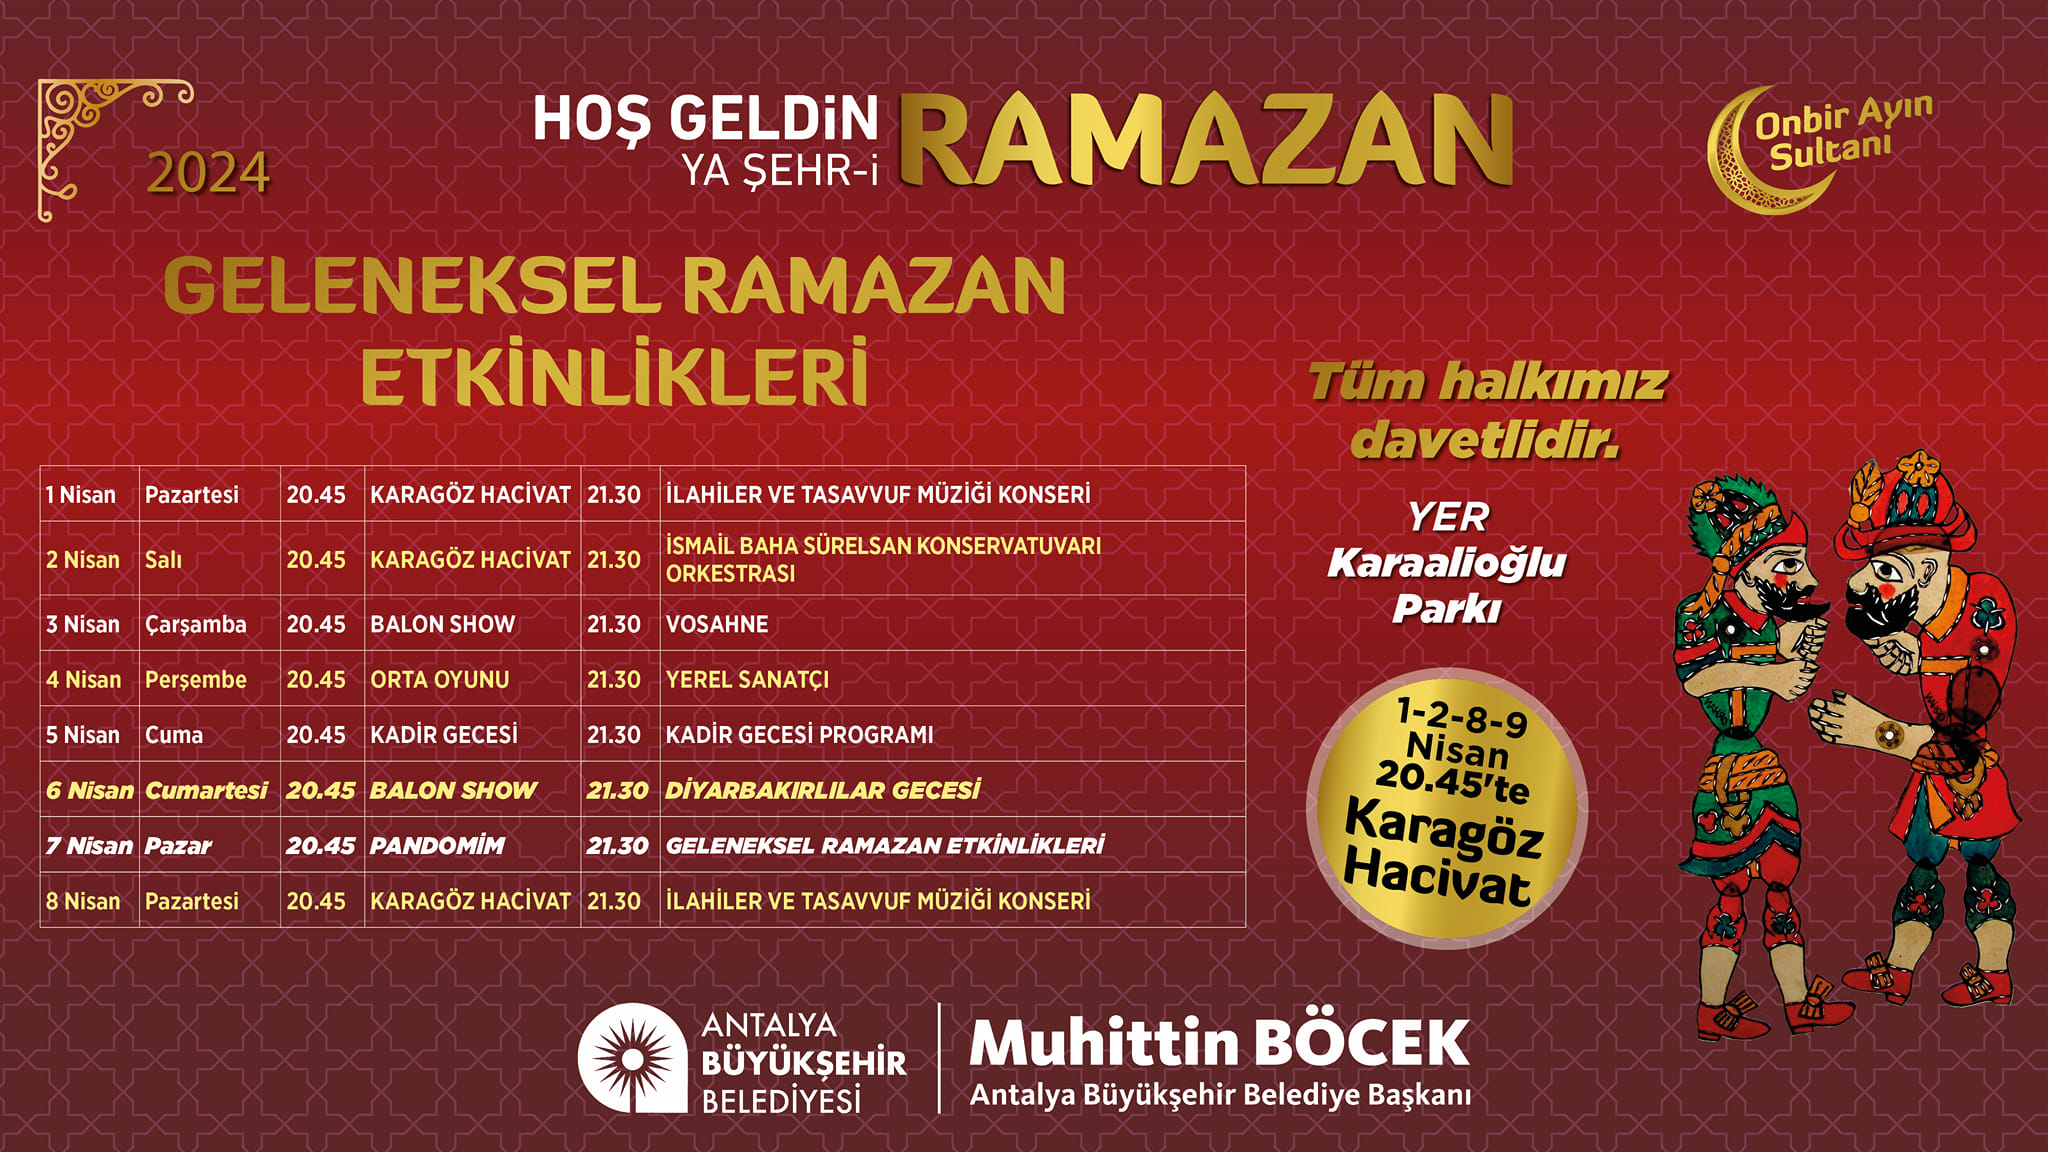 Antalya Büyükşehir Belediyesi, Karaalioğlu Parkı'nda Geleneksel Ramazan Etkinlikleri düzenliyor.